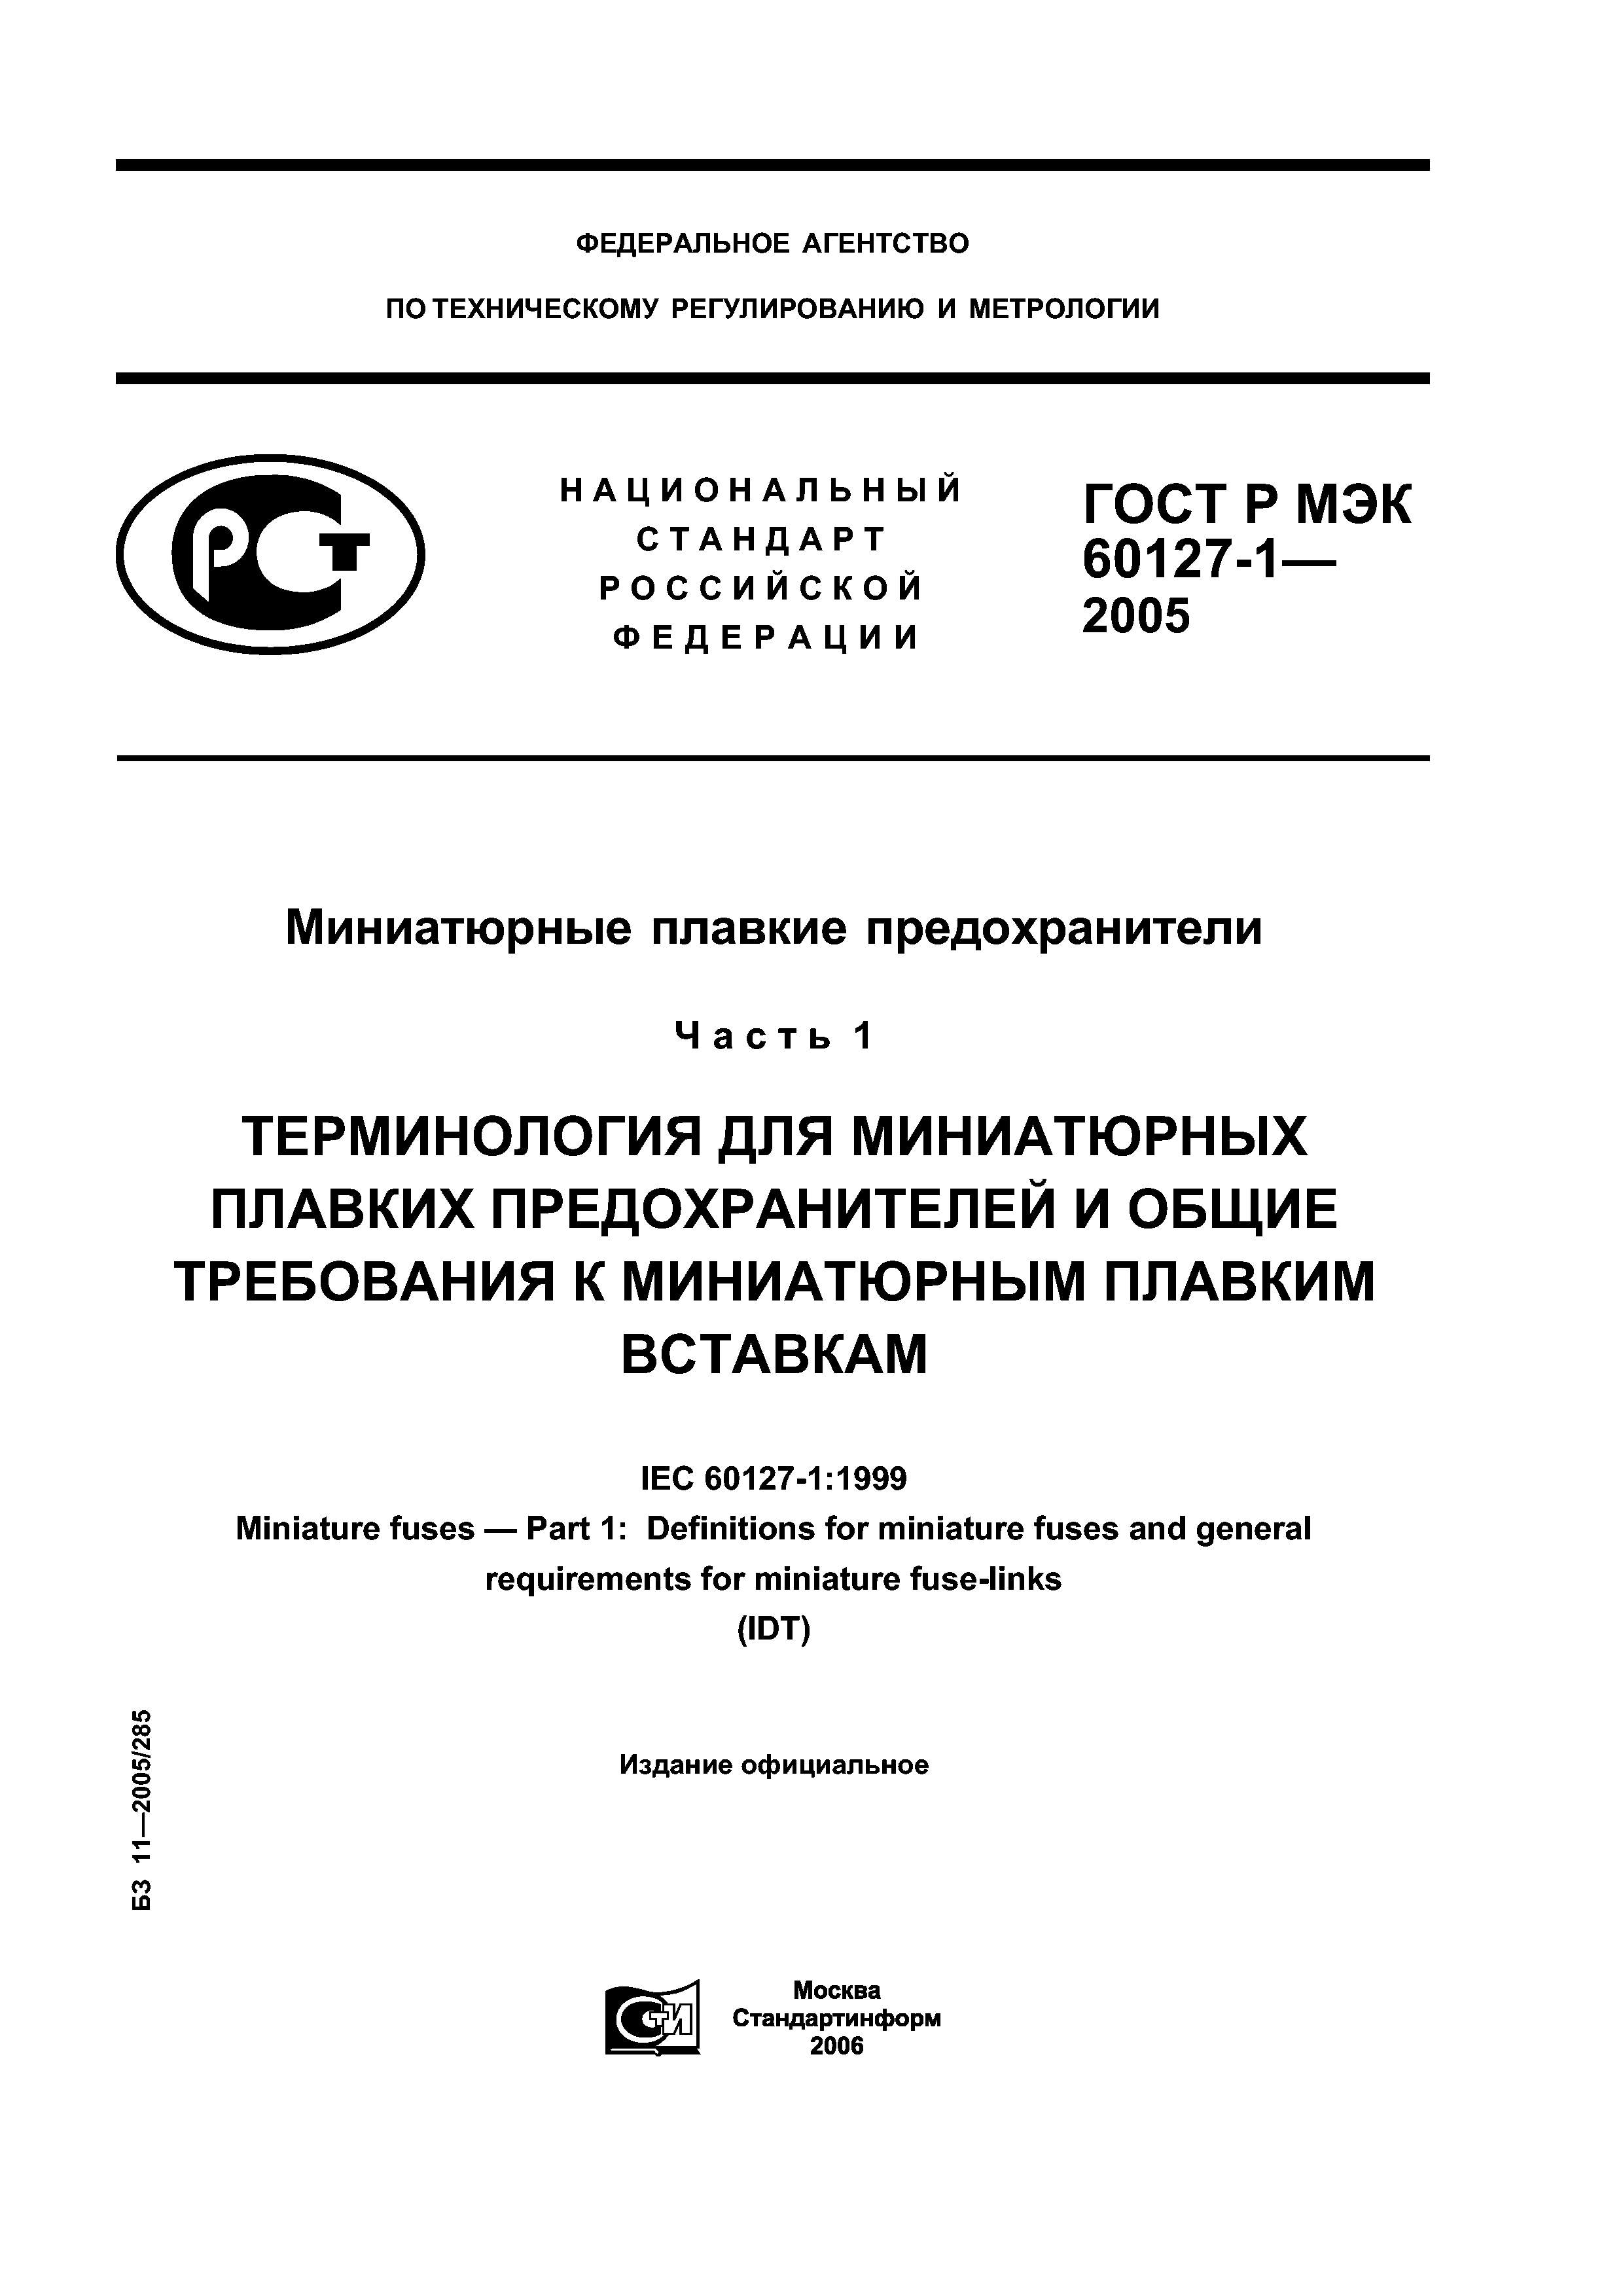 ГОСТ Р МЭК 60127-1-2005